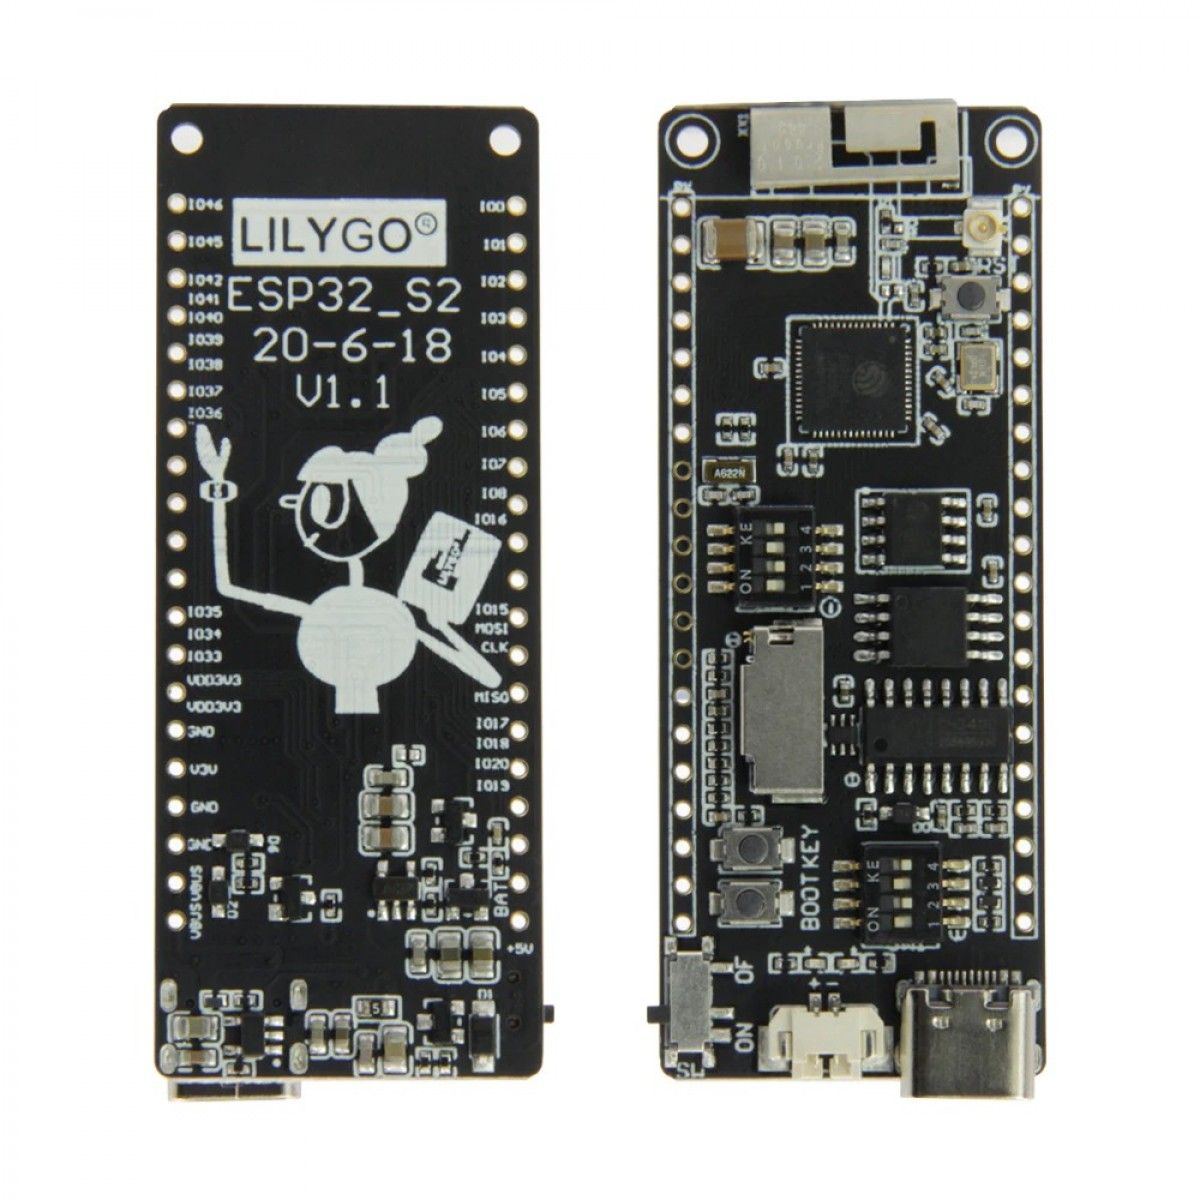 LilyGO-H434-TTGO-T8-ESP32-S2-USB-C-Voor-en-Achterkant-Front-and-Back-1200x1200.jpg